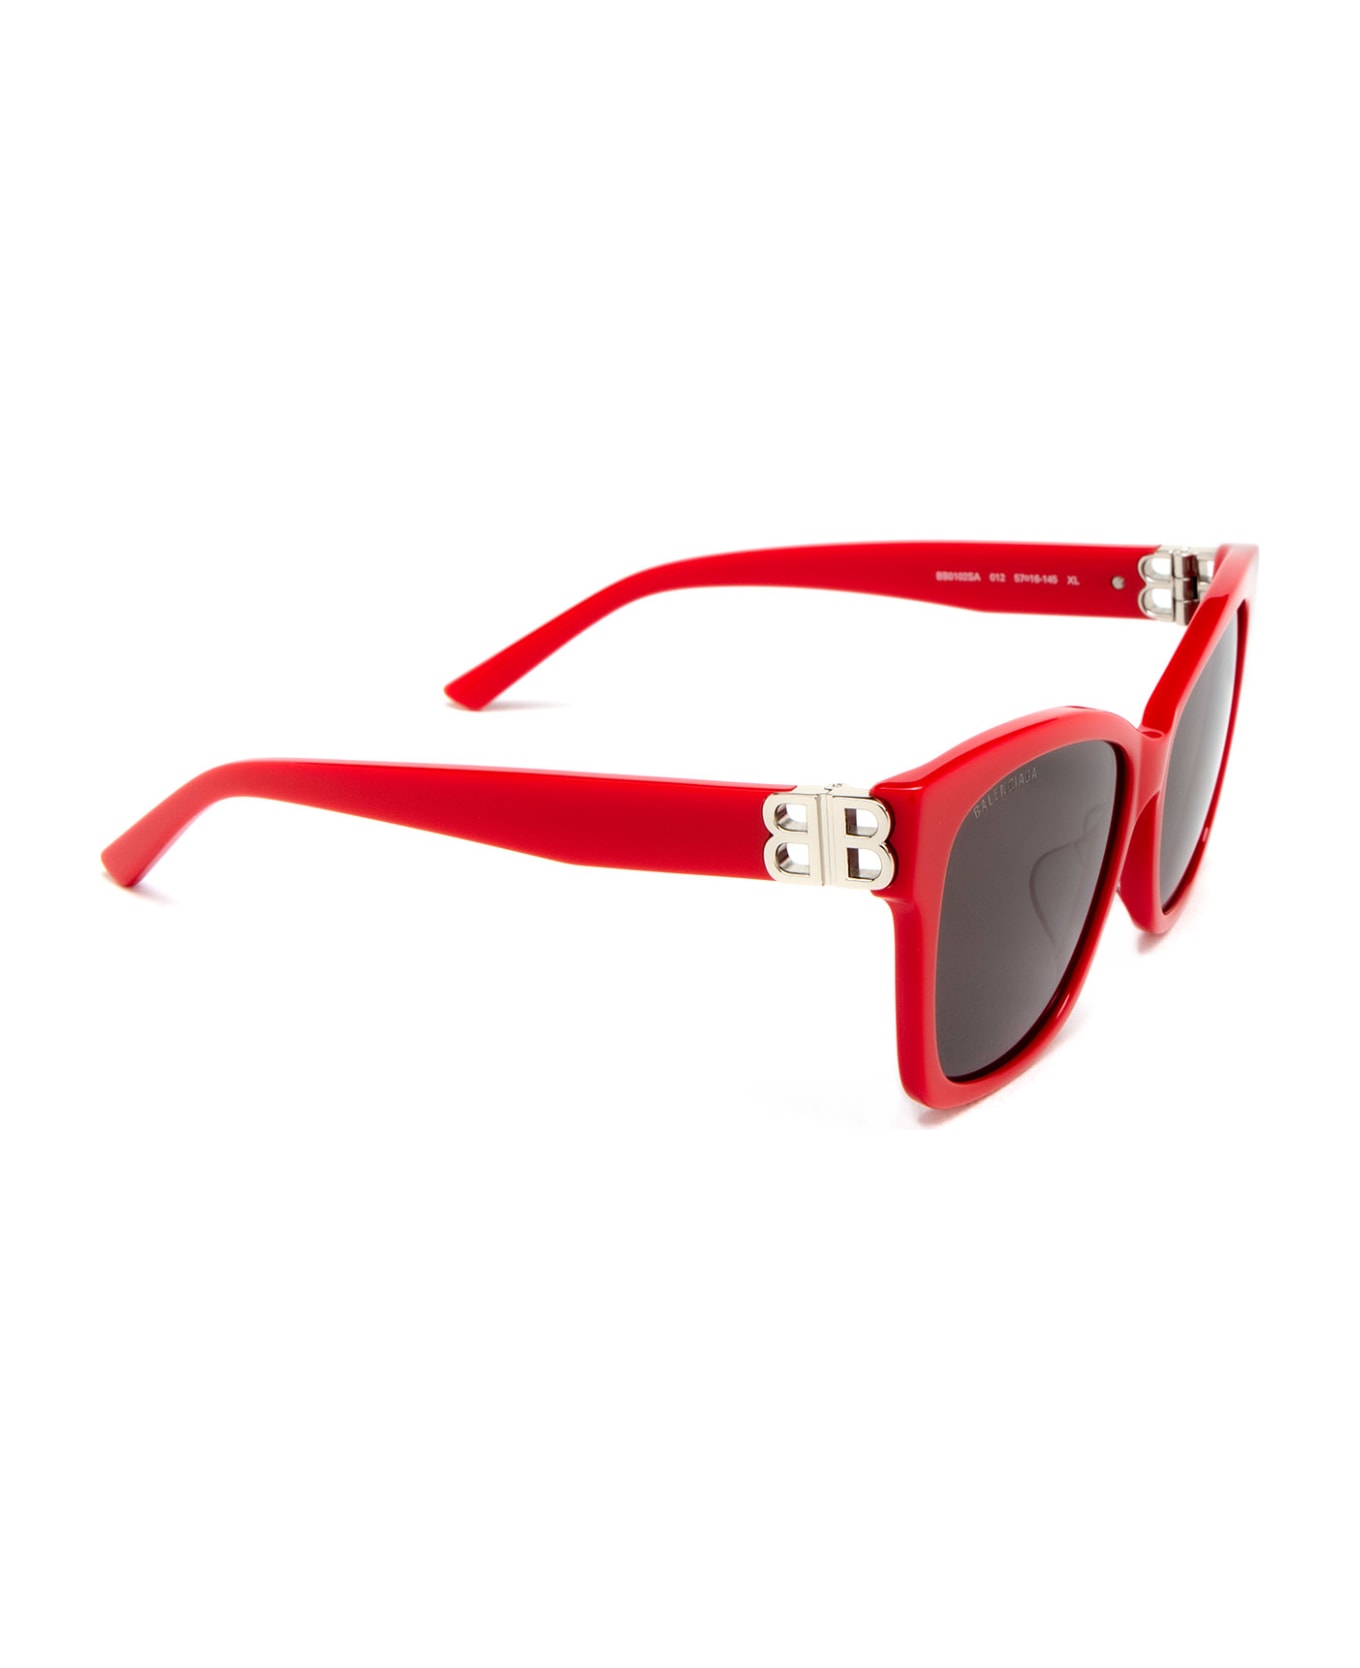 Balenciaga Eyewear Bb0102sa Sunglasses - Red サングラス